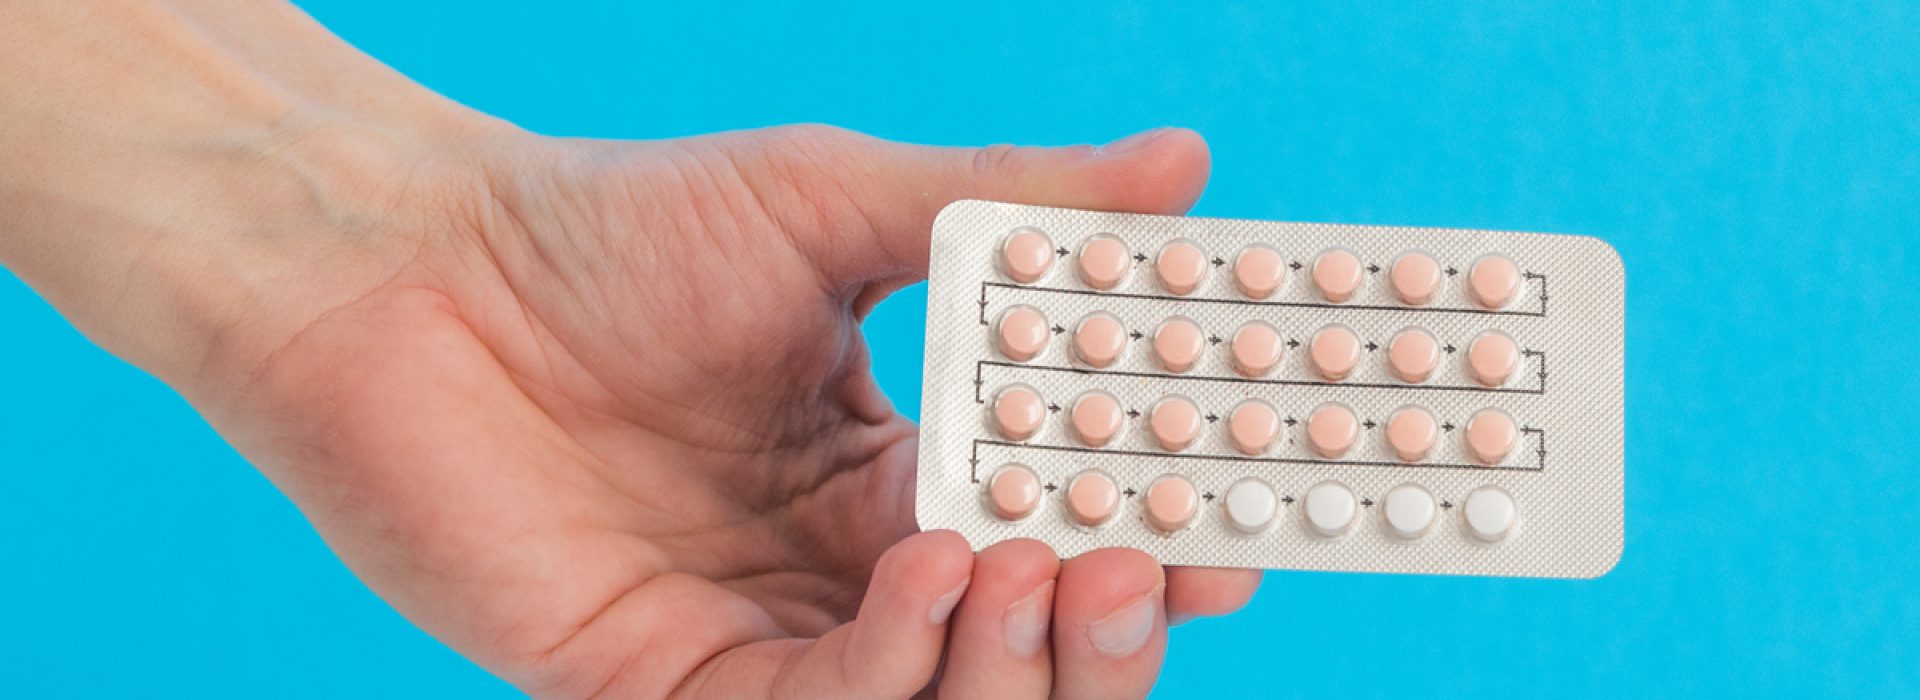 pastillas-anticonceptivas-beneficios